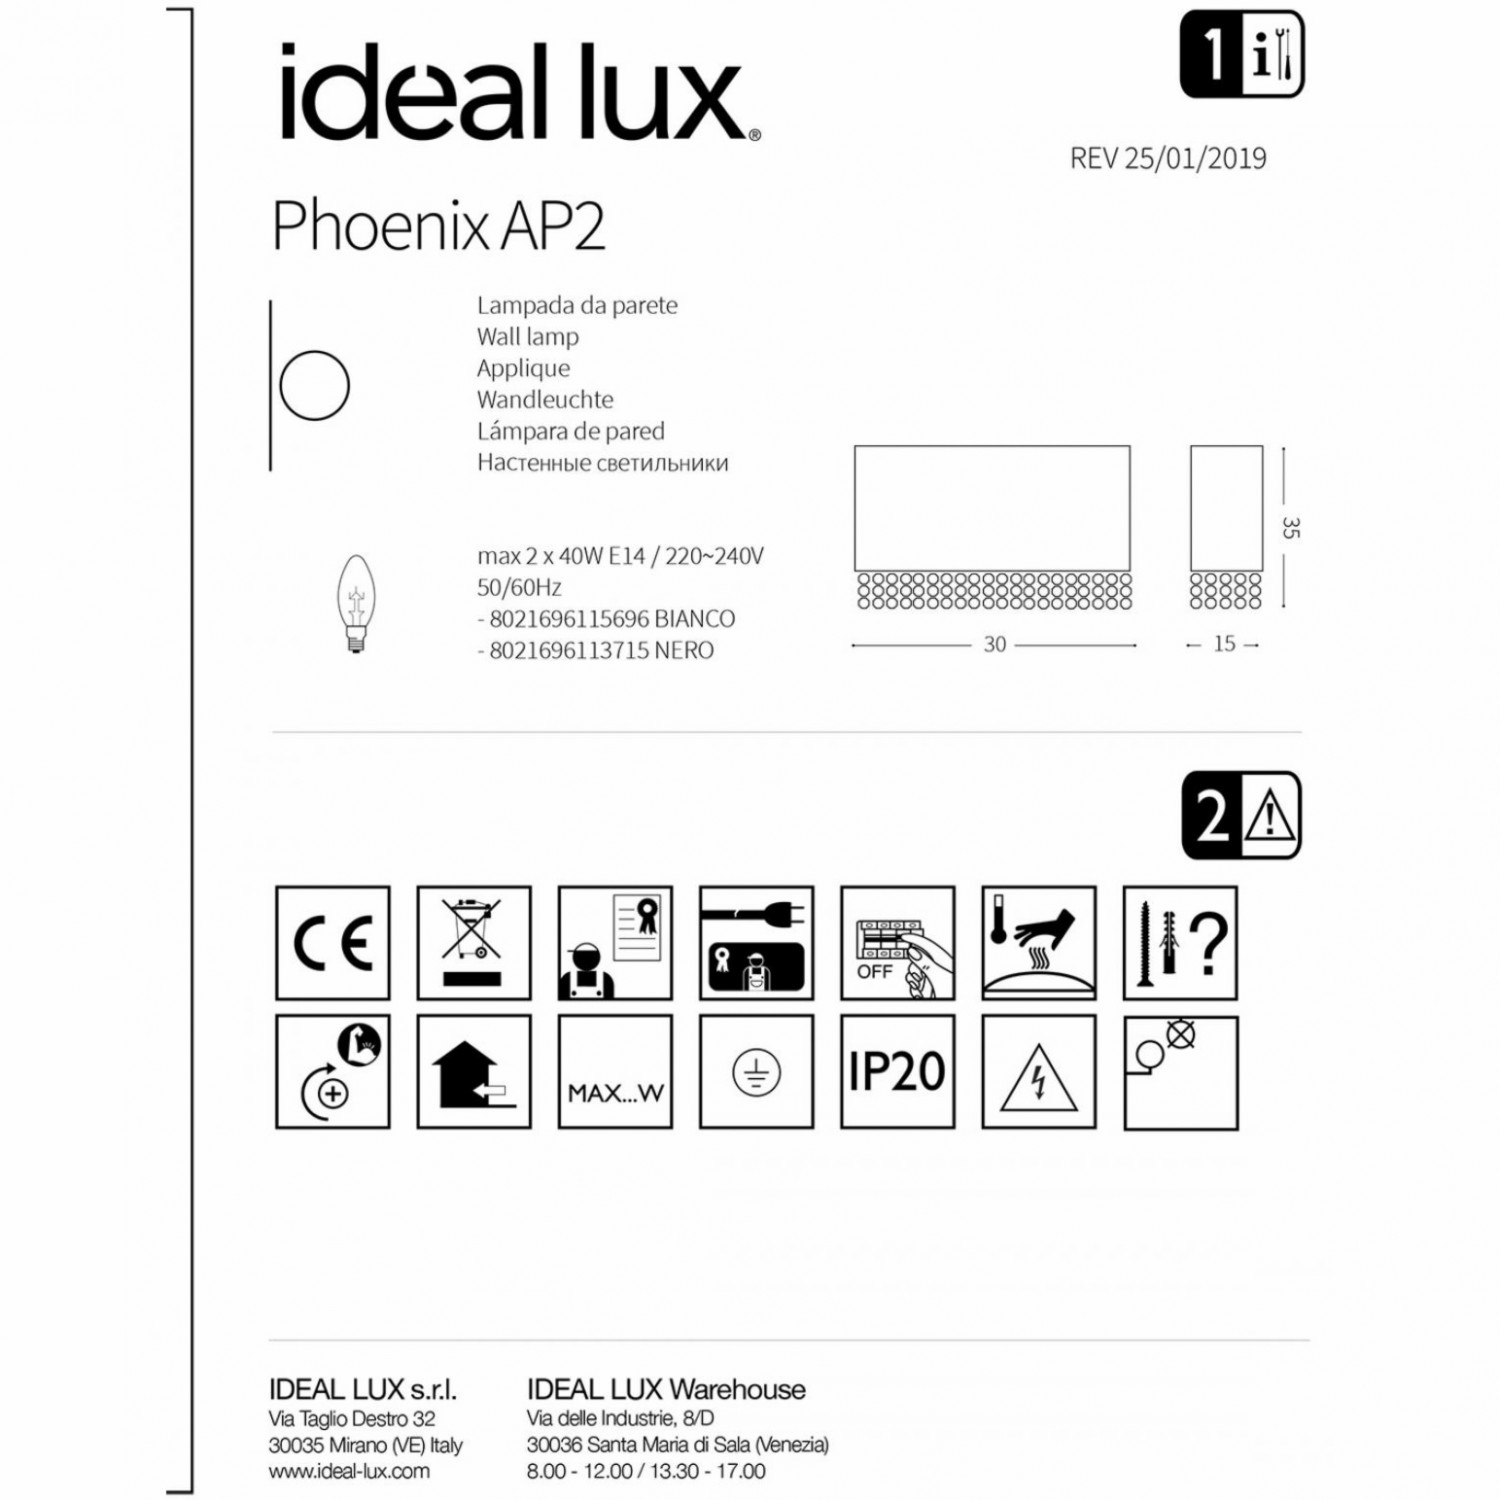 Бра Ideal Lux PHOENIX AP2 BIANCO 115696